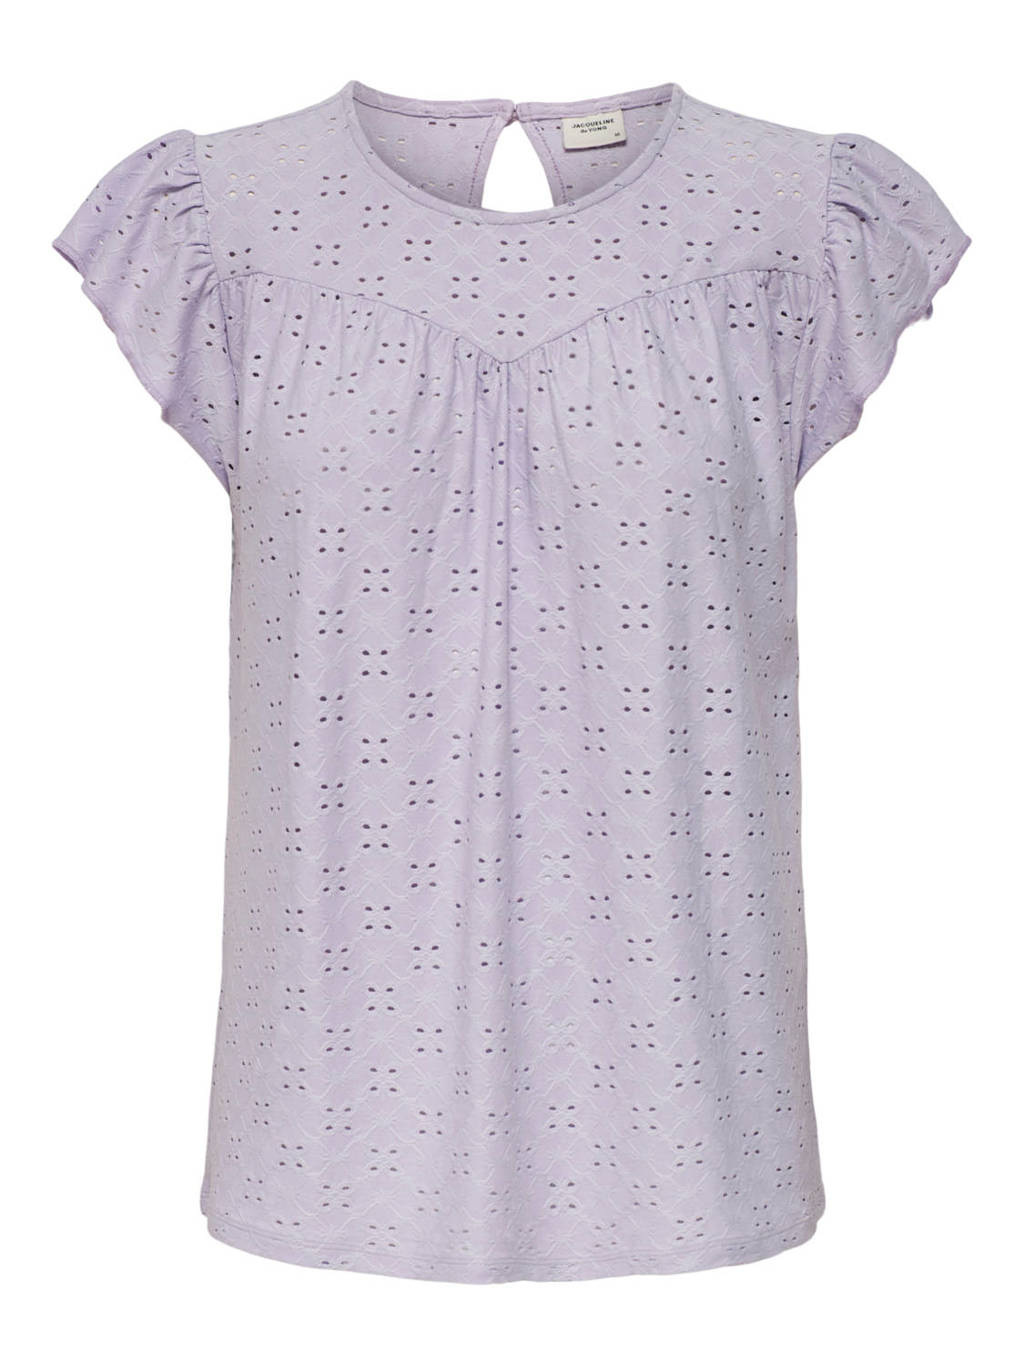 Lilakleurige dames JDY top van polyester met kapmouwtjes, ronde hals, knoopsluiting en broderie